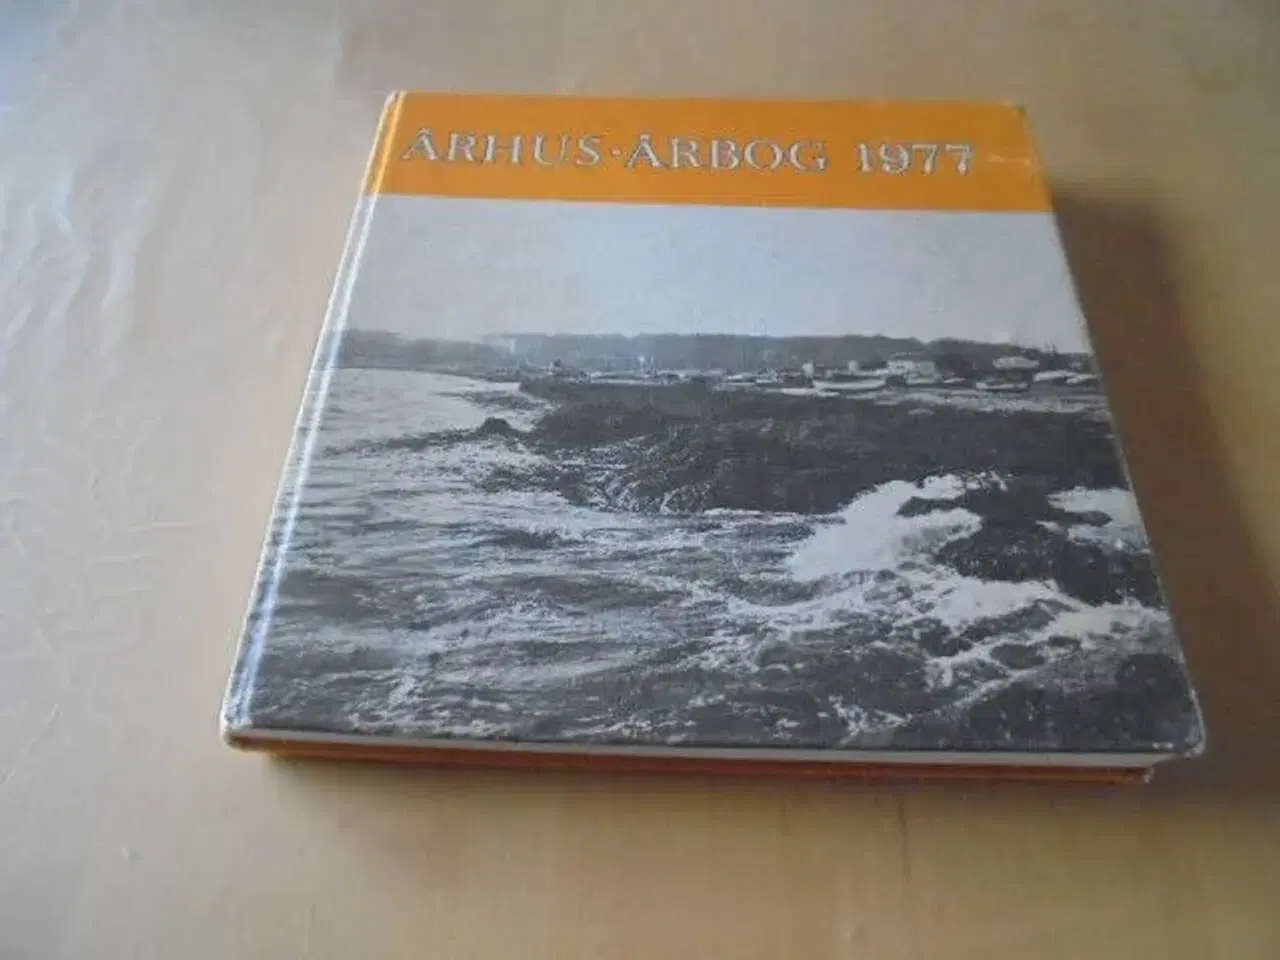 Billede 1 - Århus-årbog 1977-se fotos og omtale 